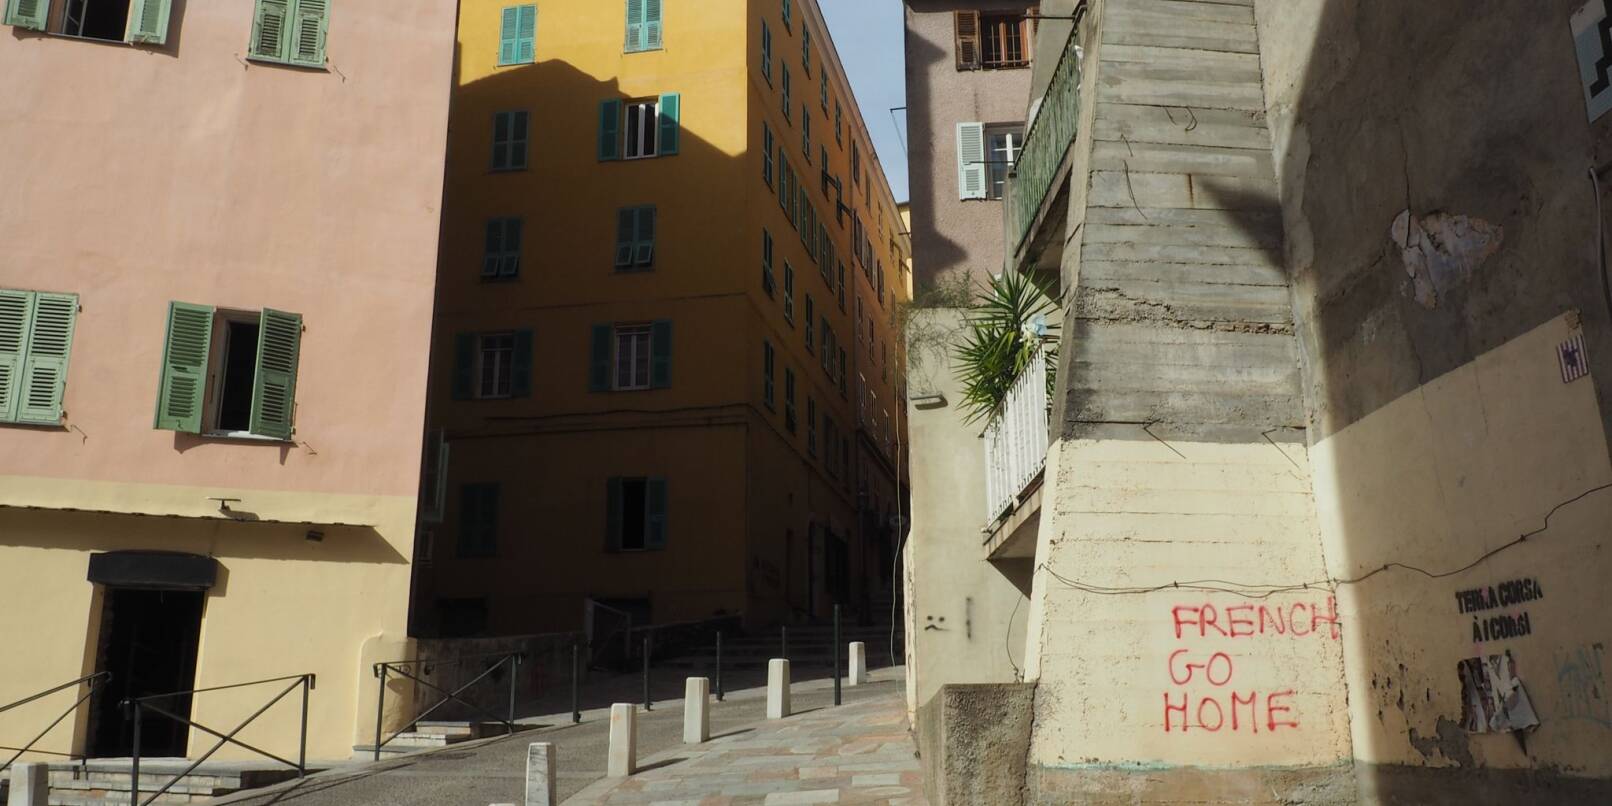 Auf Hauswänden in Bastia sind anti-französische Sprüche zu lesen. Autonomie für die Mittelmeerinsel Korsika scheint mittlerweile zum Greifen nah.